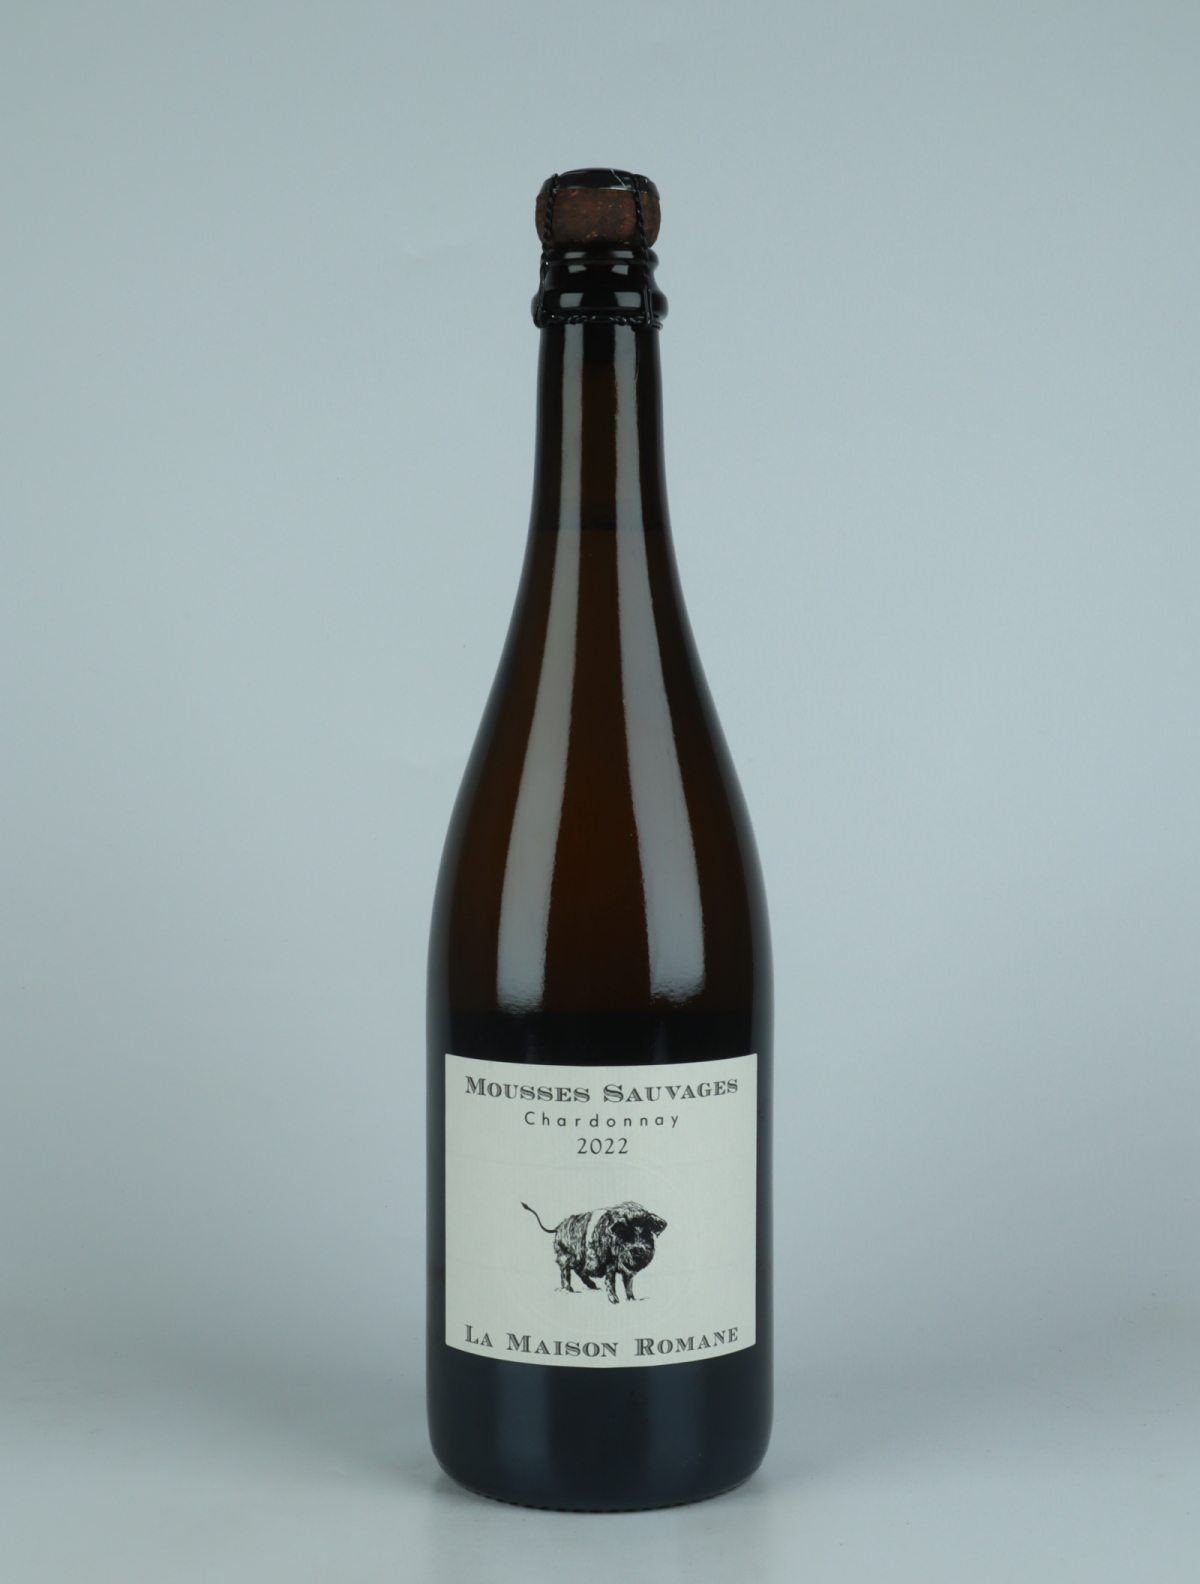 En flaske 2022 Mousses Sauvages Chardonnay Øl fra La Maison Romane, Bourgogne i Frankrig